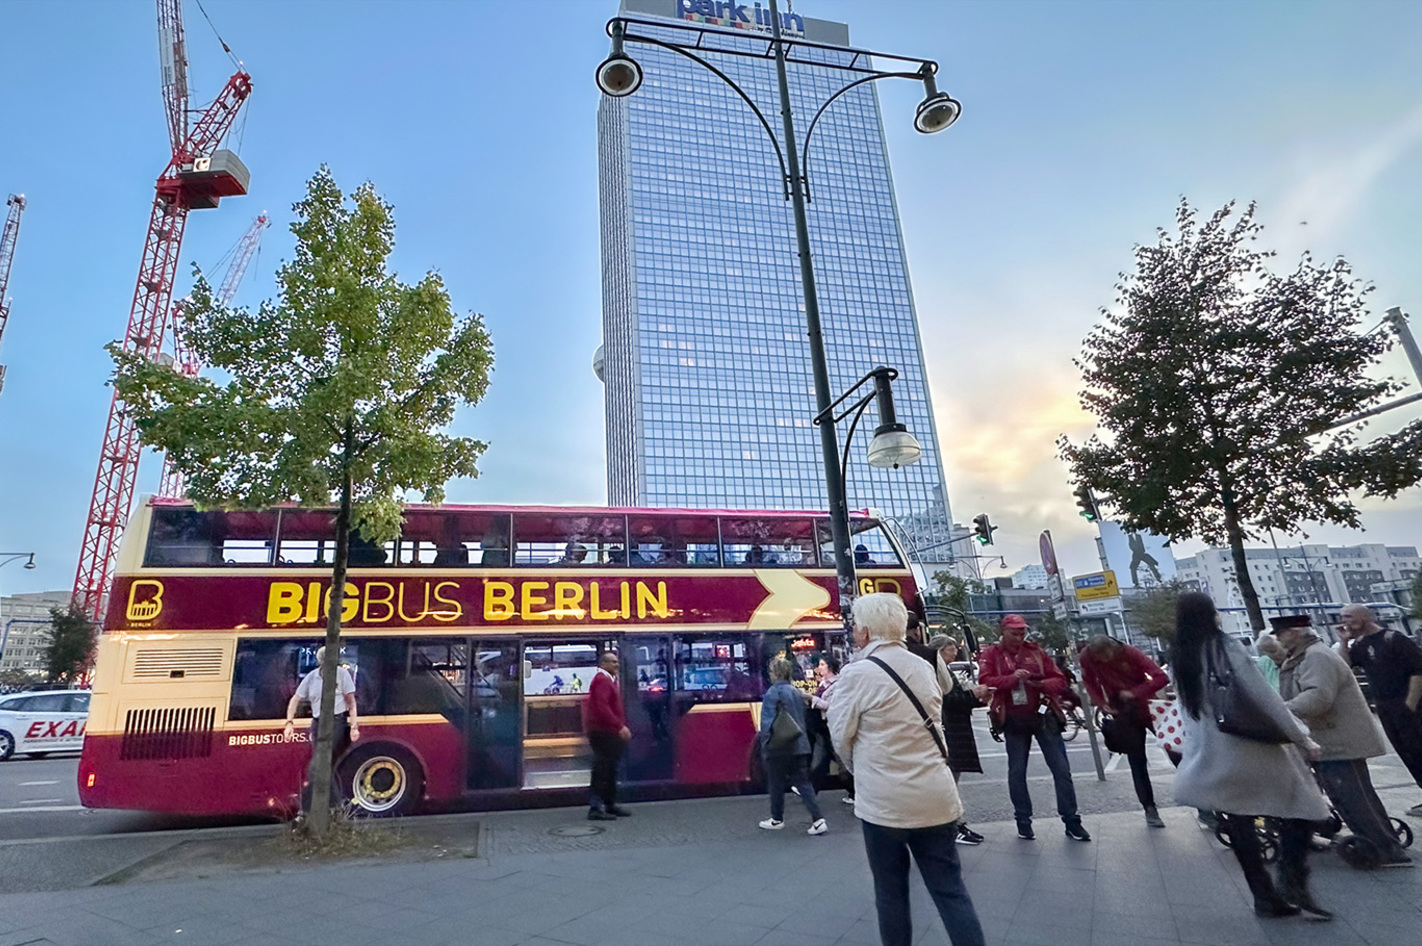 Berlin Abendliche Stadtrundfahrt Berlin (75 Minuten) in Ca. 75 Minuten